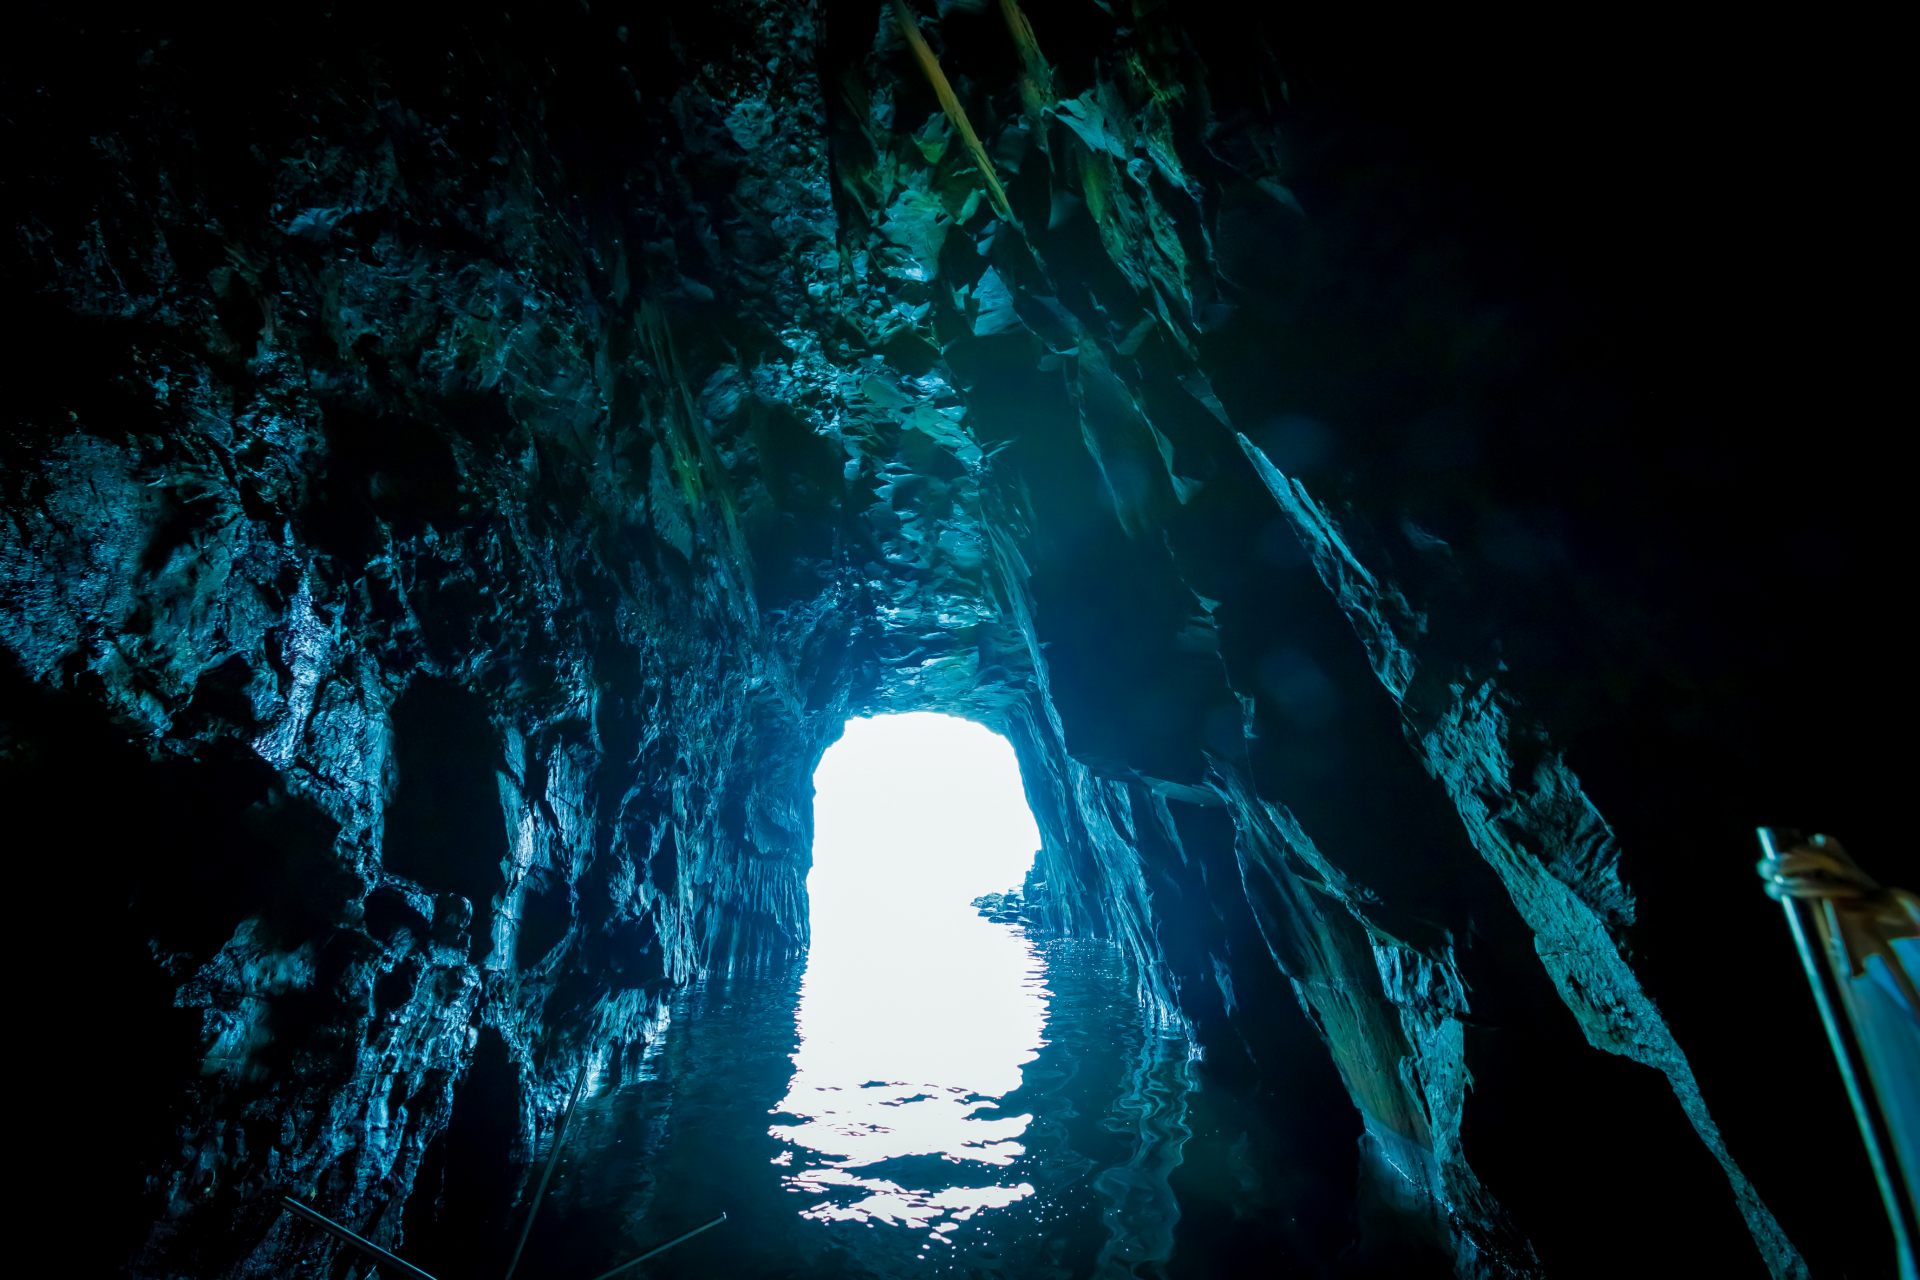 Incluso con un mini bote, la entrada de la cueva es difícil de atravesar. Pero una vez que estés dentro de la cueva, te rodeará una vista maravillosa.